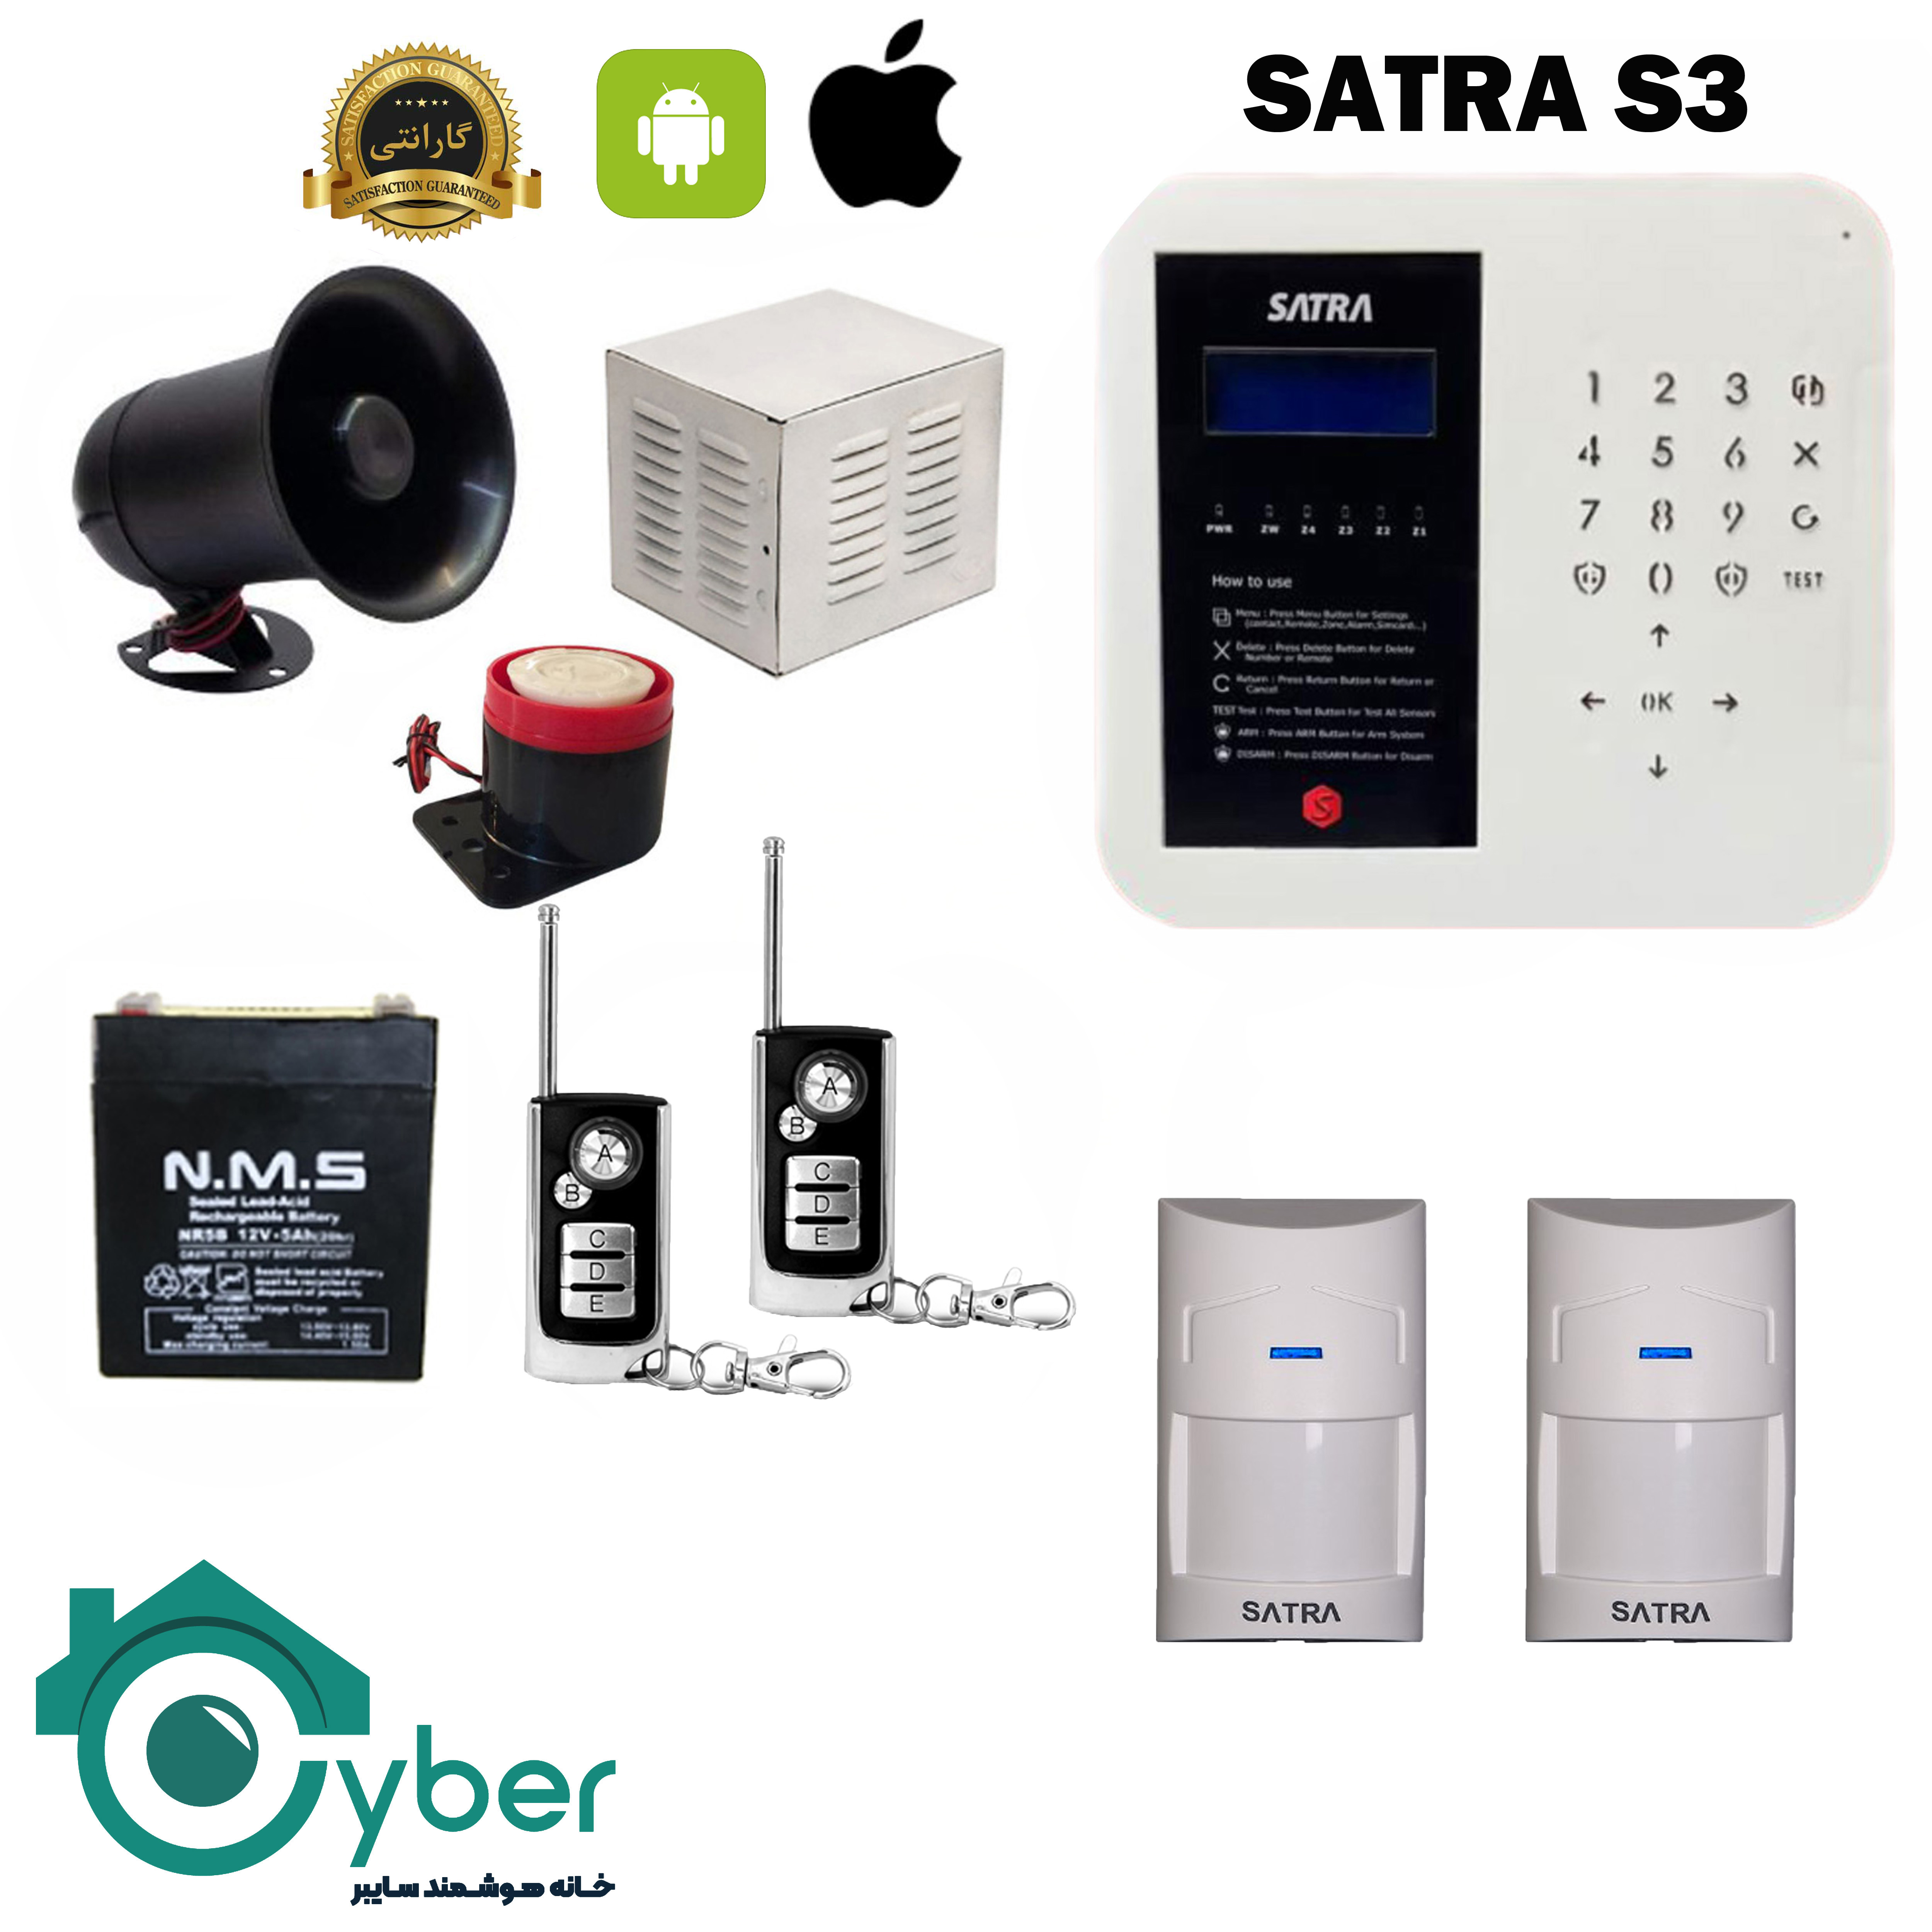 پکیج کامل دزدگیر اماکن SARTA S3 ساترا - 2 عدد سنسور باسیم